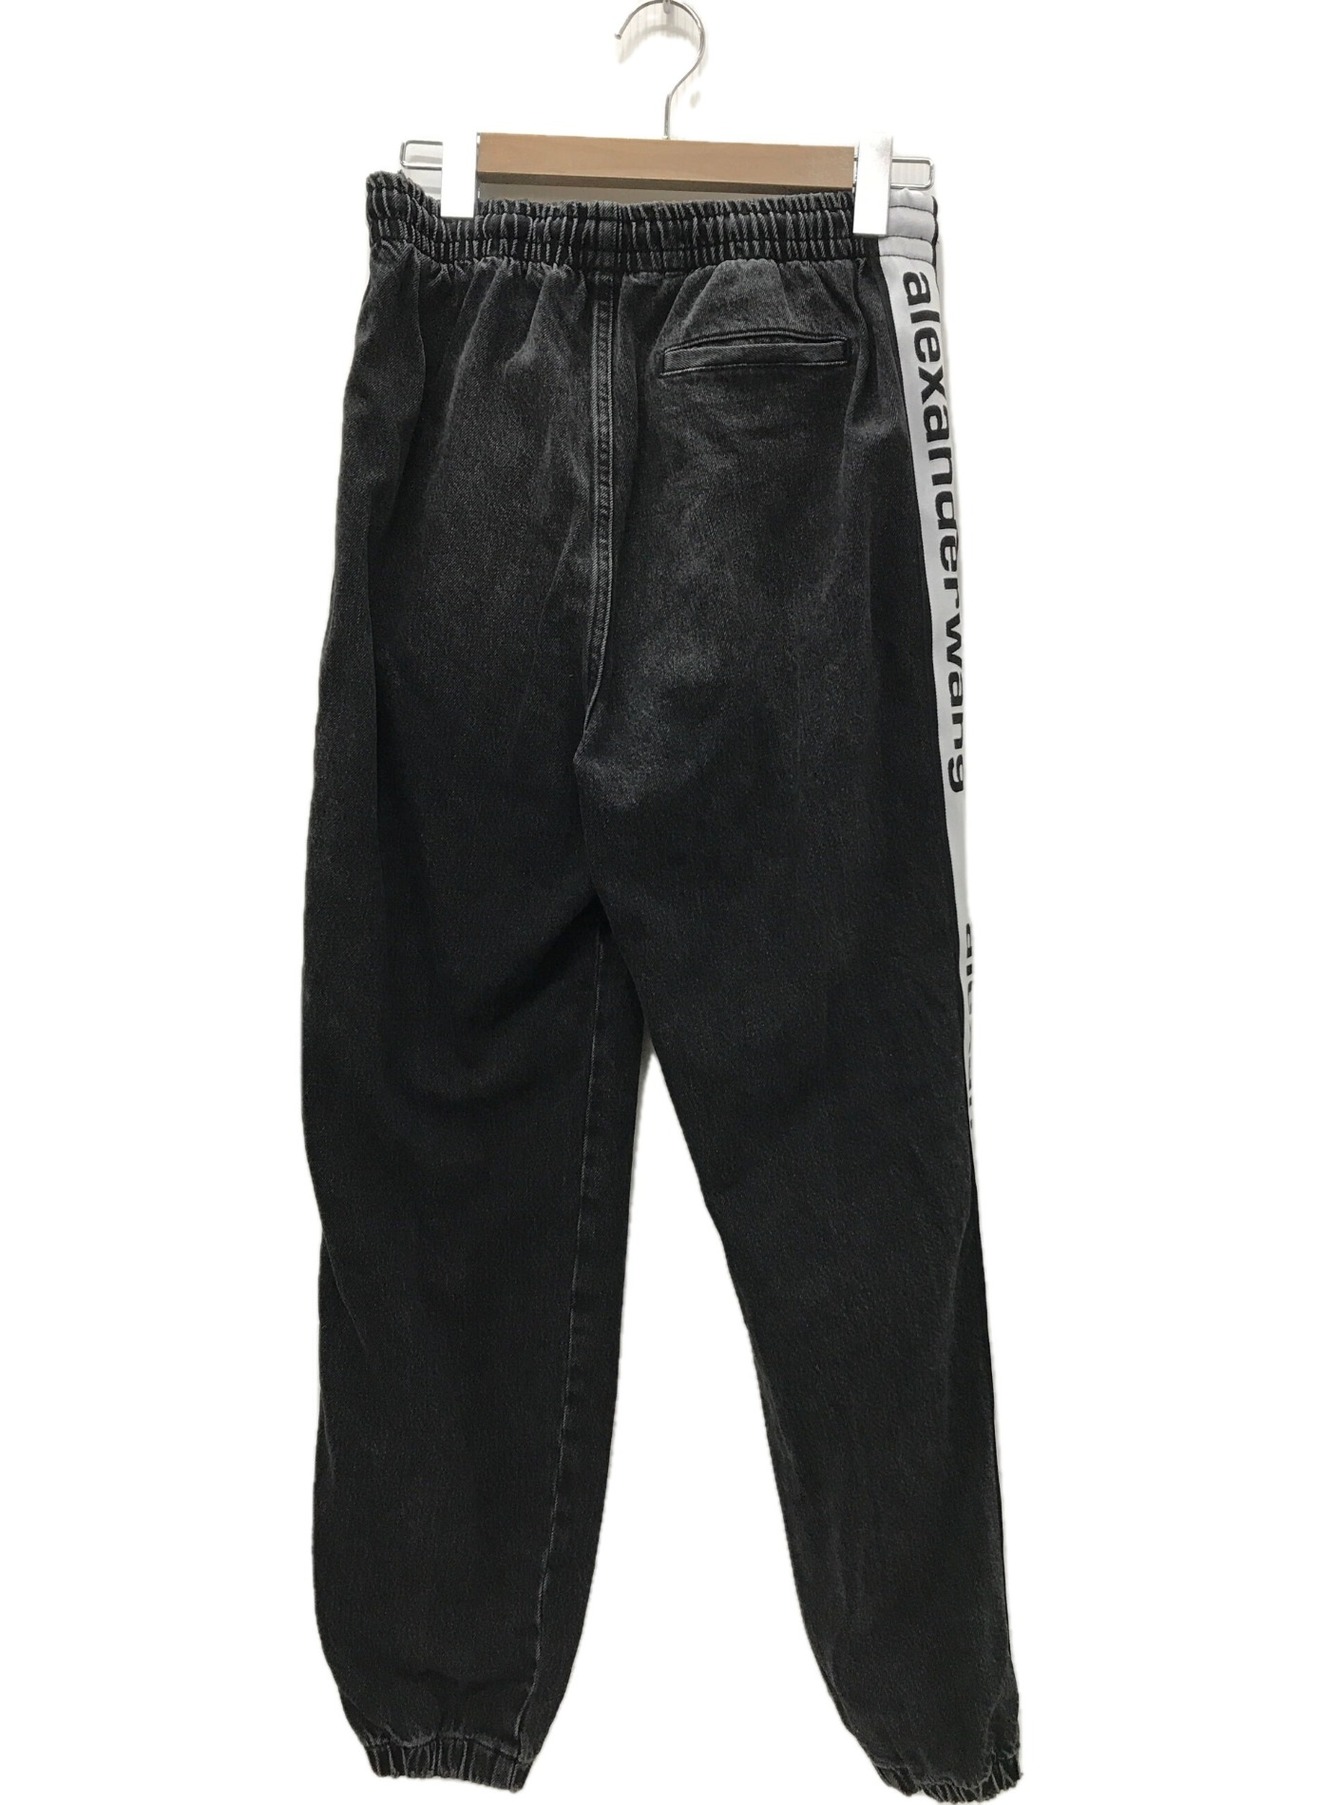 ALEXANDER WANG (アレキサンダーワン) Logo jogger pants テープロゴデニムパンツ ブラック サイズ:S